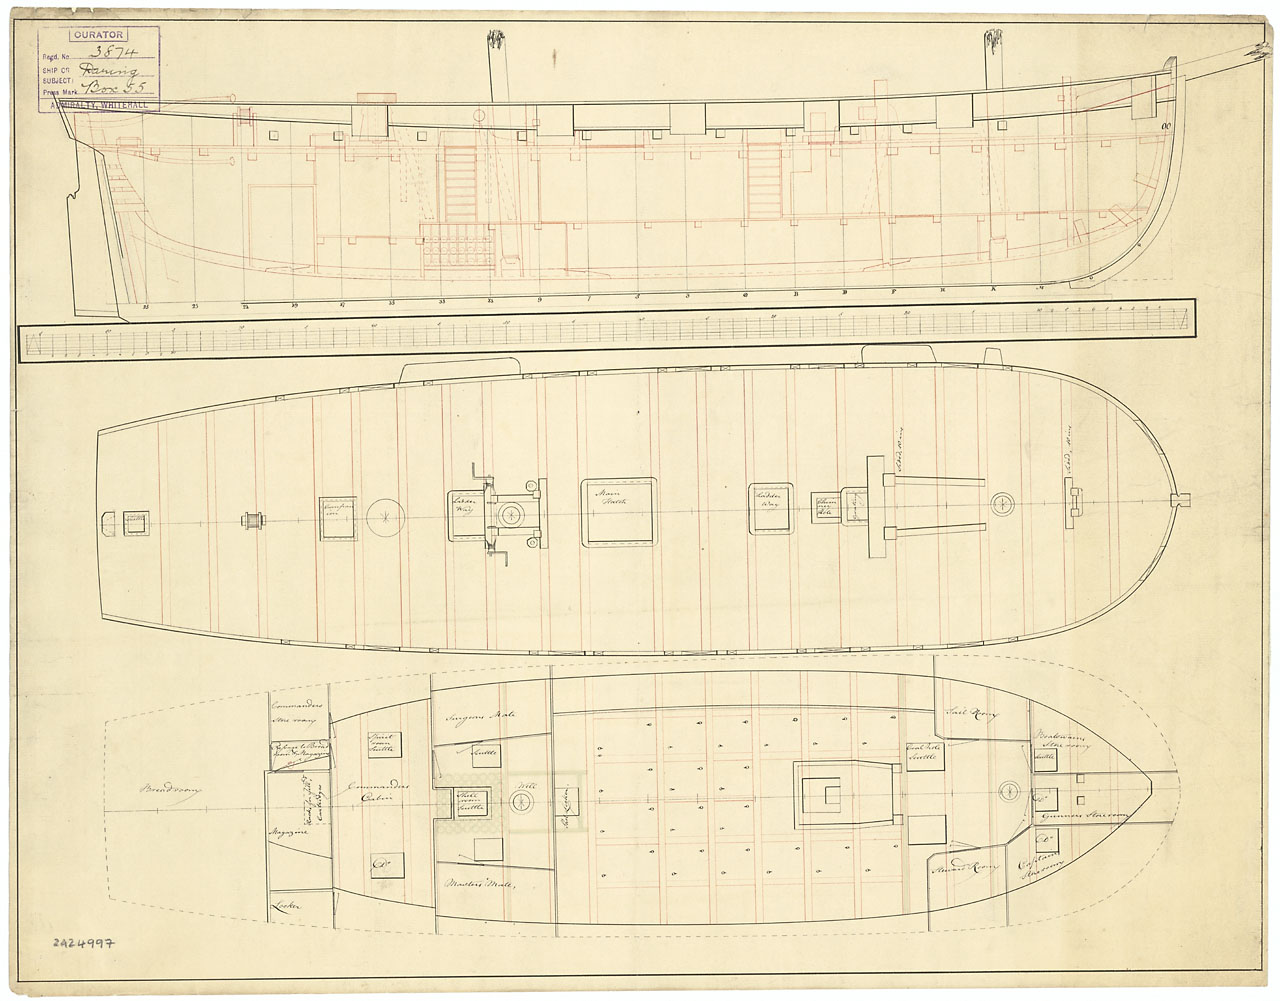 Daring (1804), a 12-gun Gunboat, later Brig.jpg